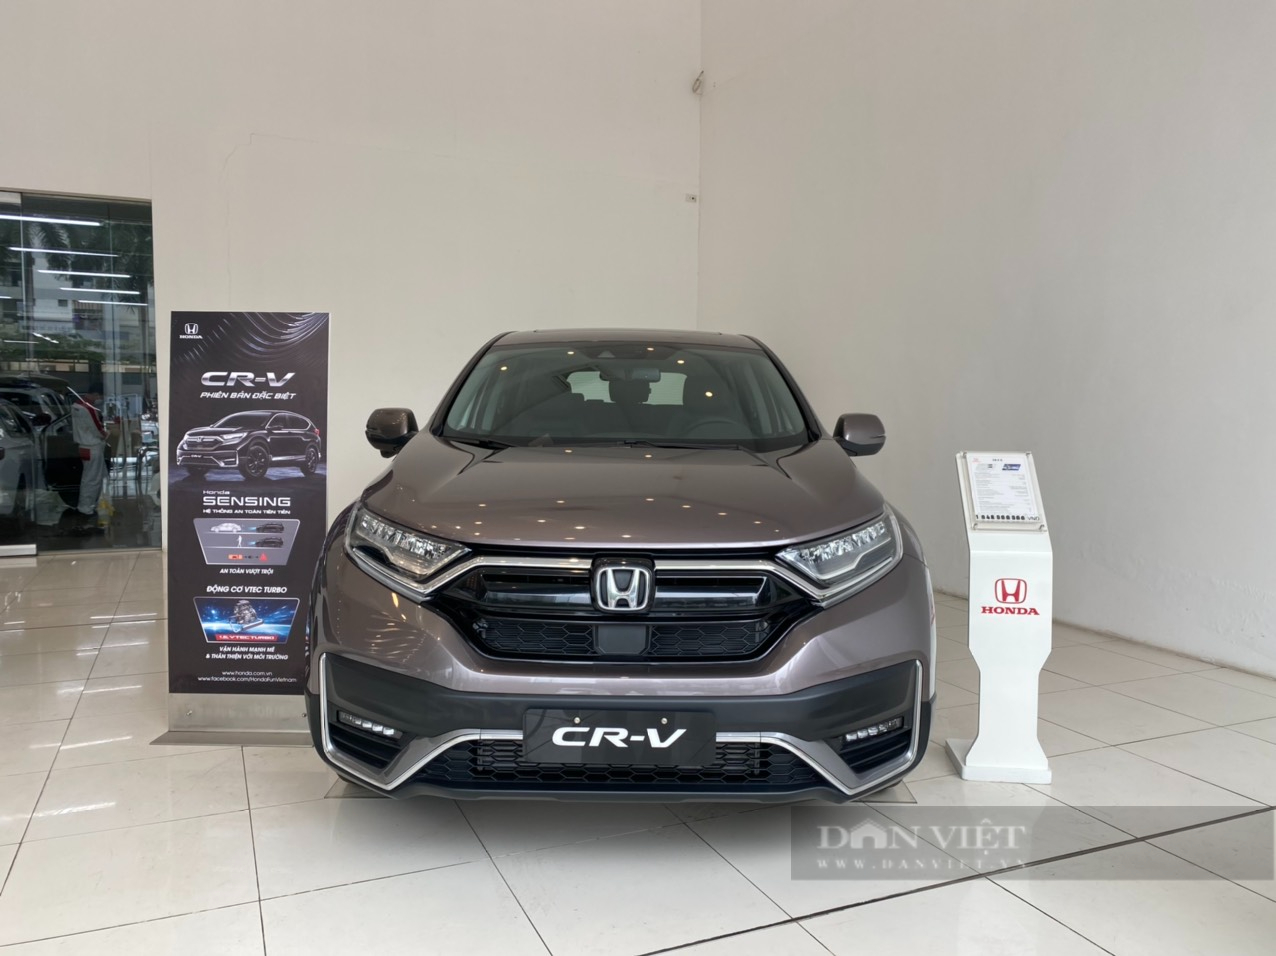 Lộ bảng giá xe Honda CRV 2021 về Việt Nam